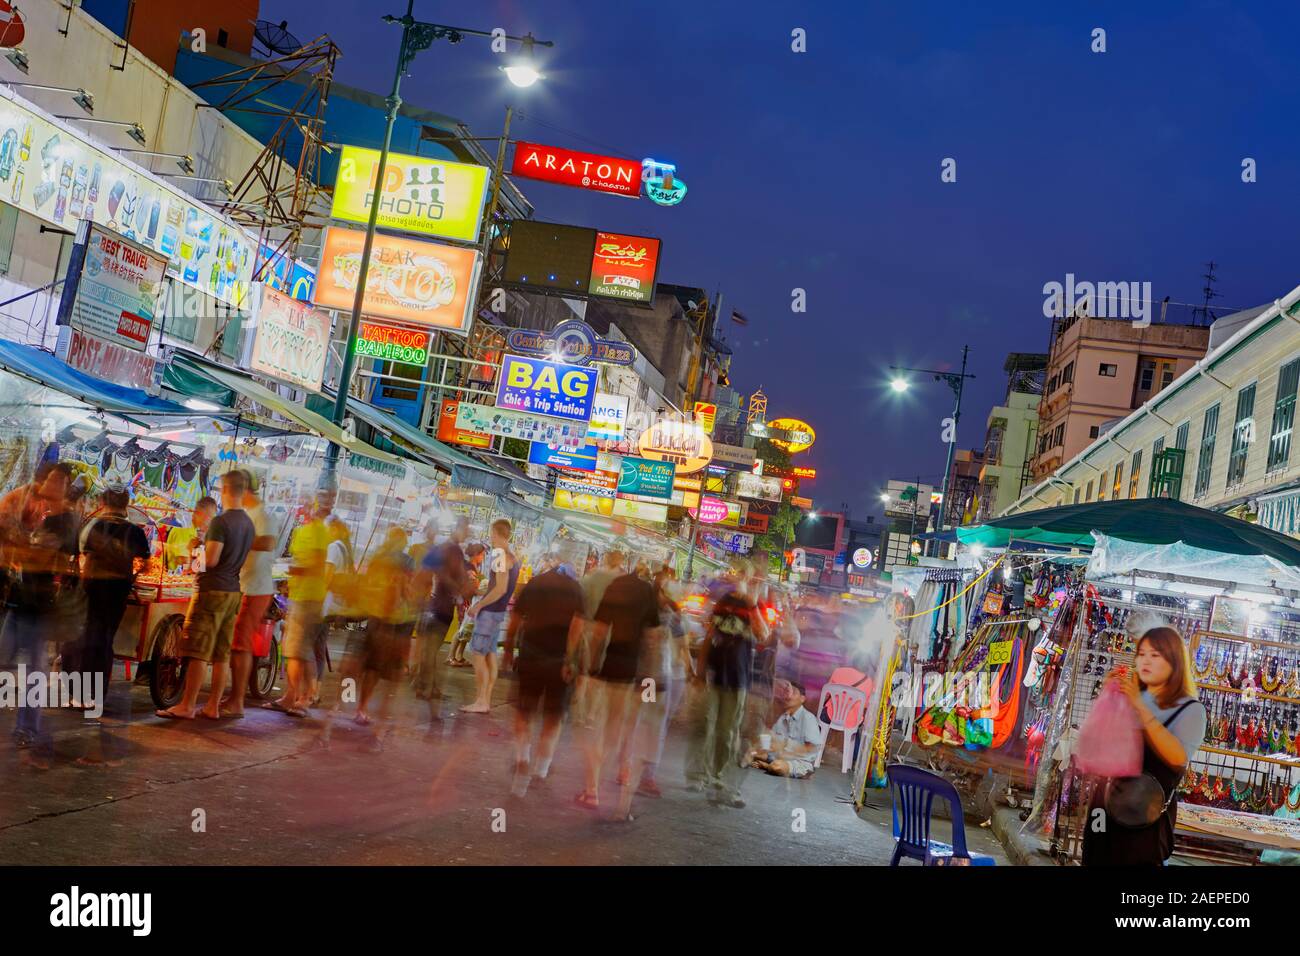 Khaosan Road at night, Bangkok, Thailand Stock Photo